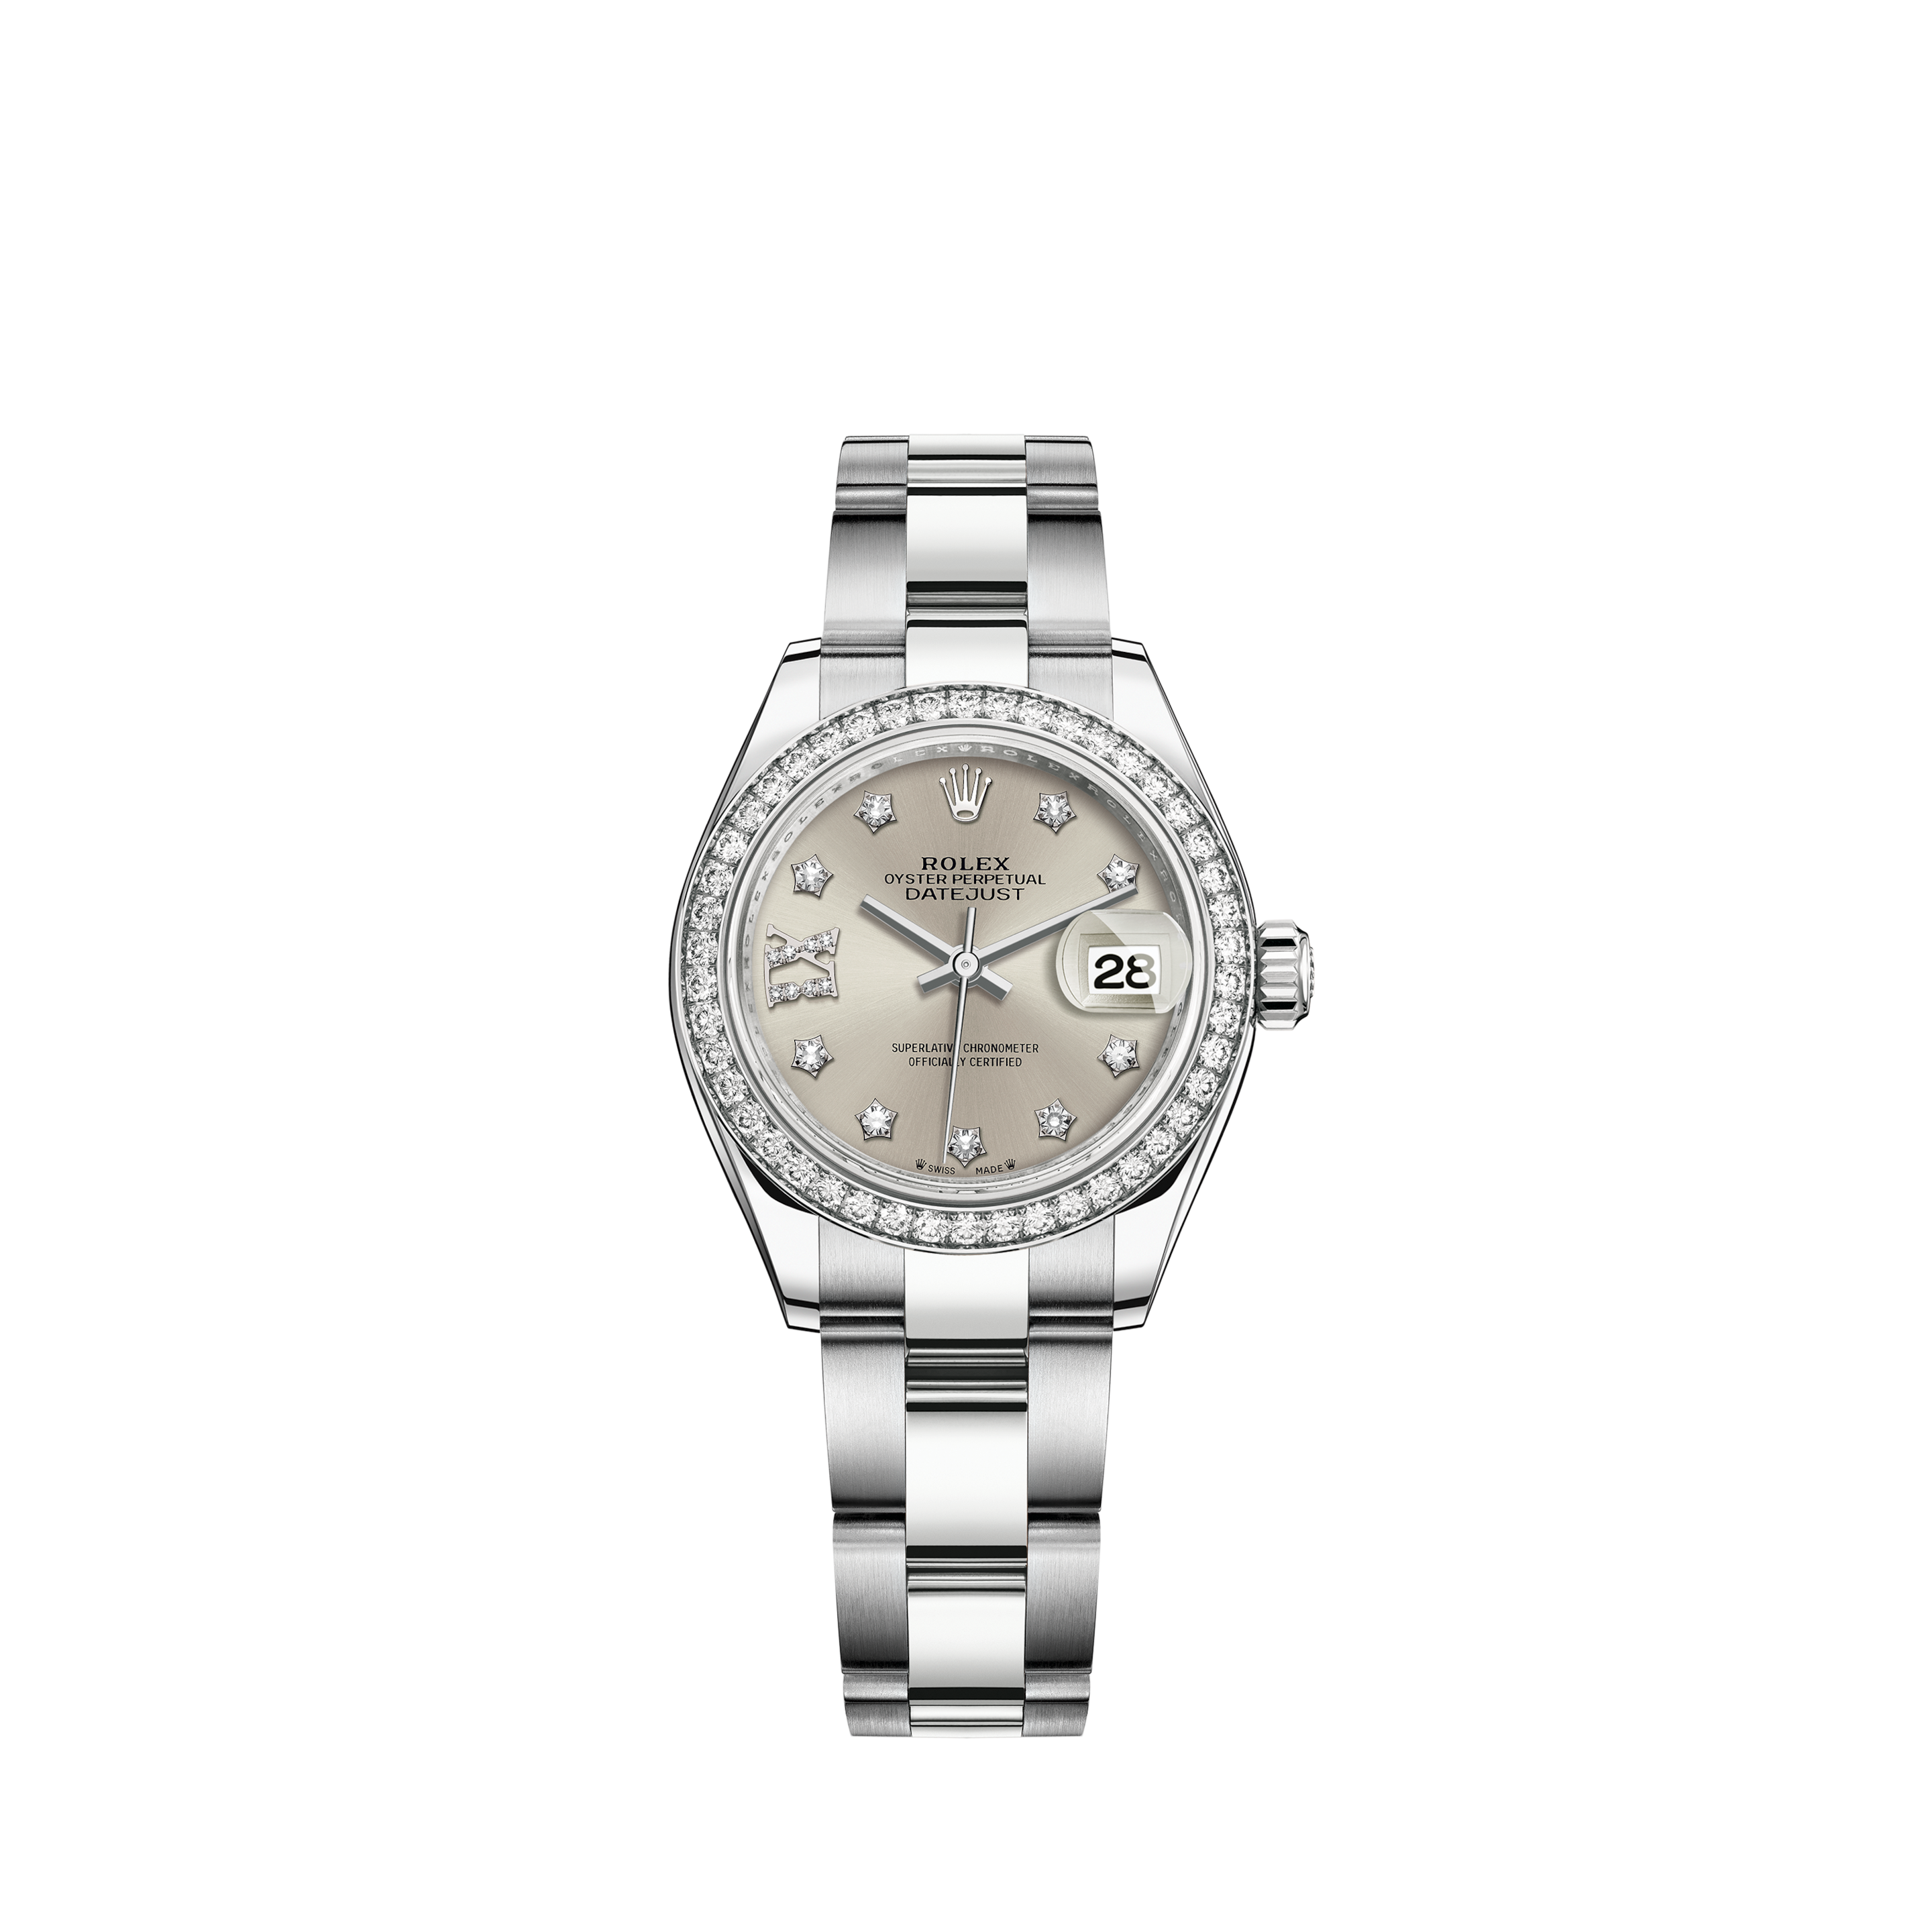 Rolex Oyster Perpetual Steel Black Dial Ladies Watch 67180